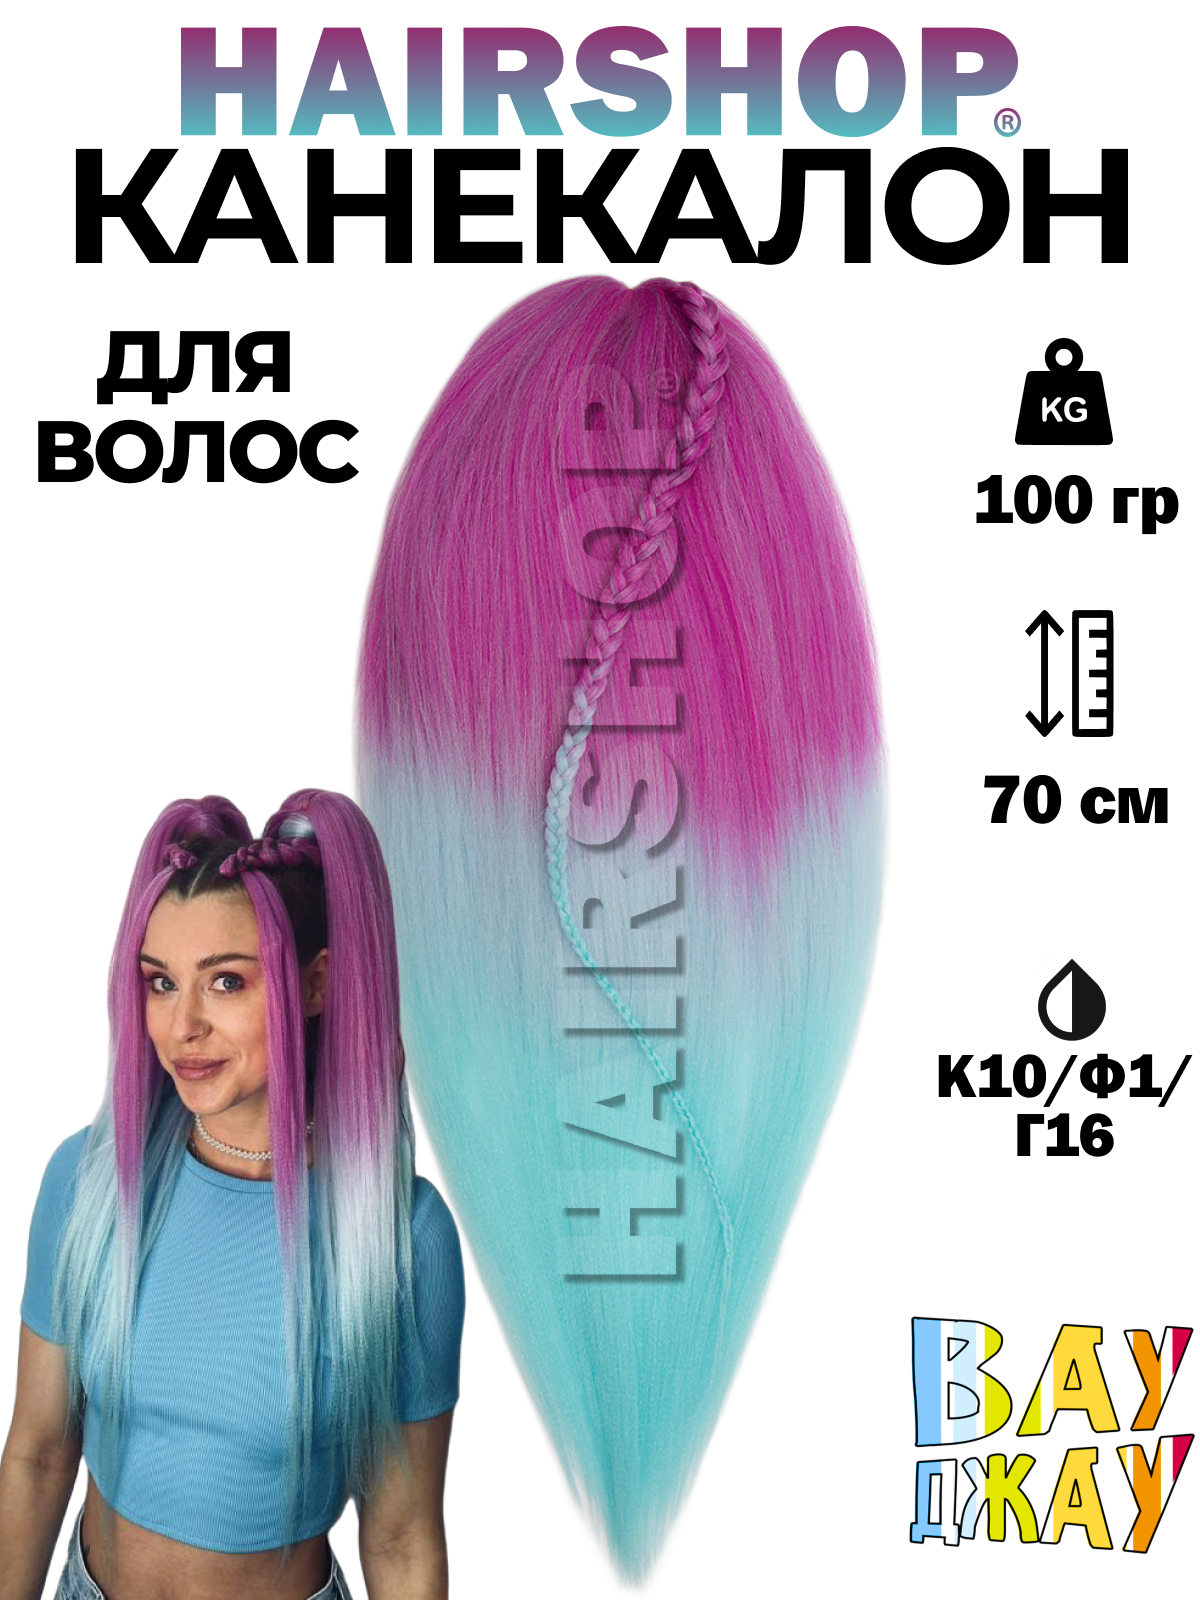 Канекалон HAIRSHOP Вау Джау К10-Ф1-Г16 1,3м 100г Розовый, Нежно-фиолетовый и голубой